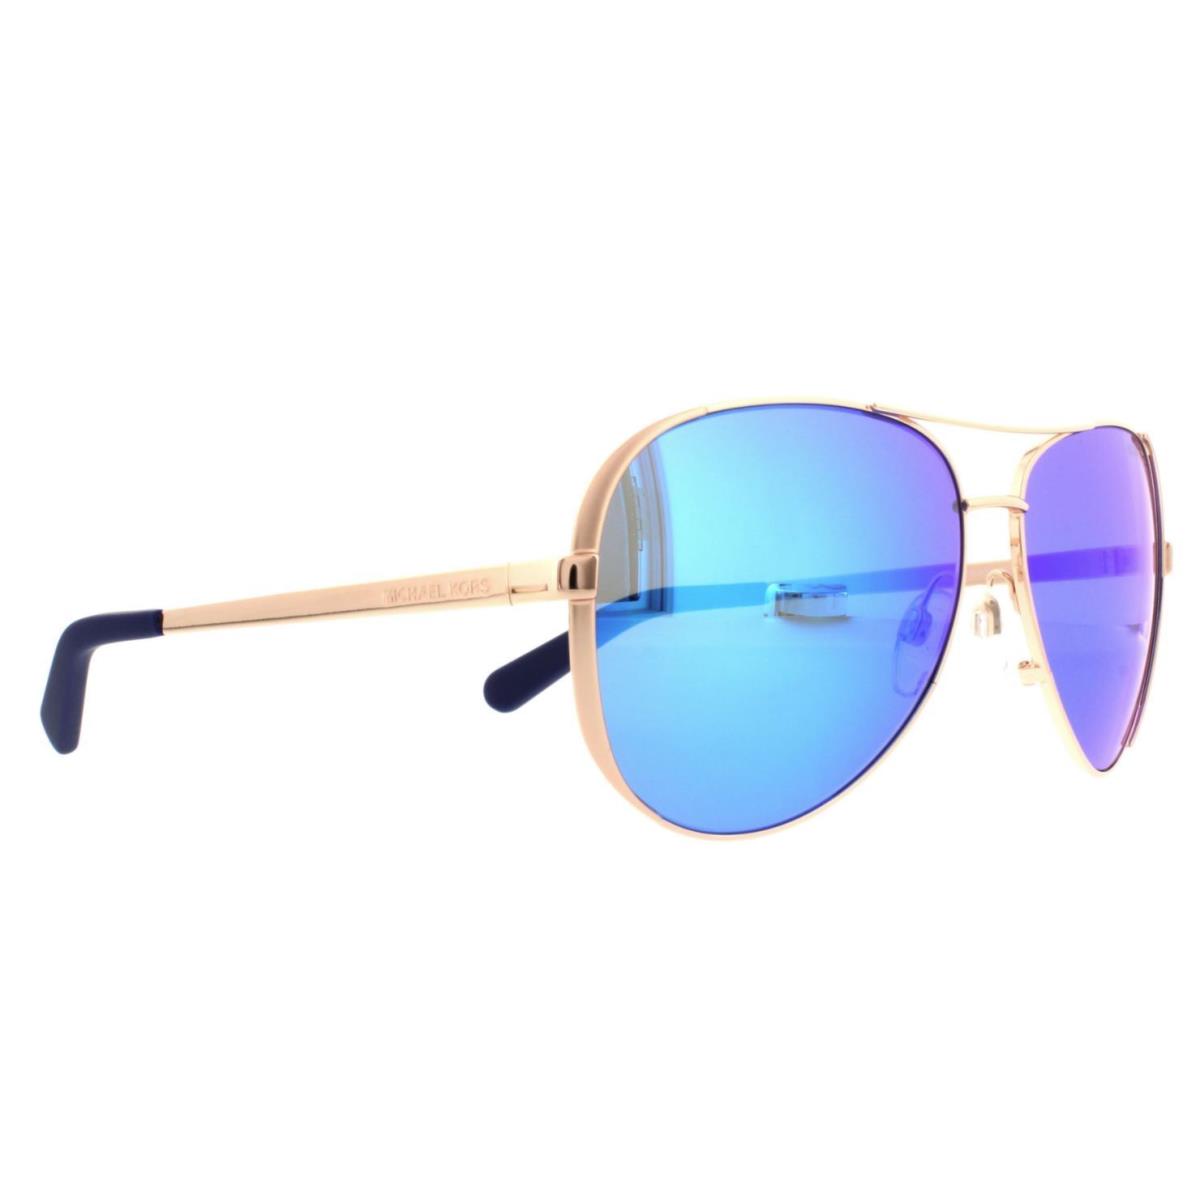 Michael Kors Gold Framed Sunglasses MK 5004 Chelsea 100325 Women Men Blue Mirror